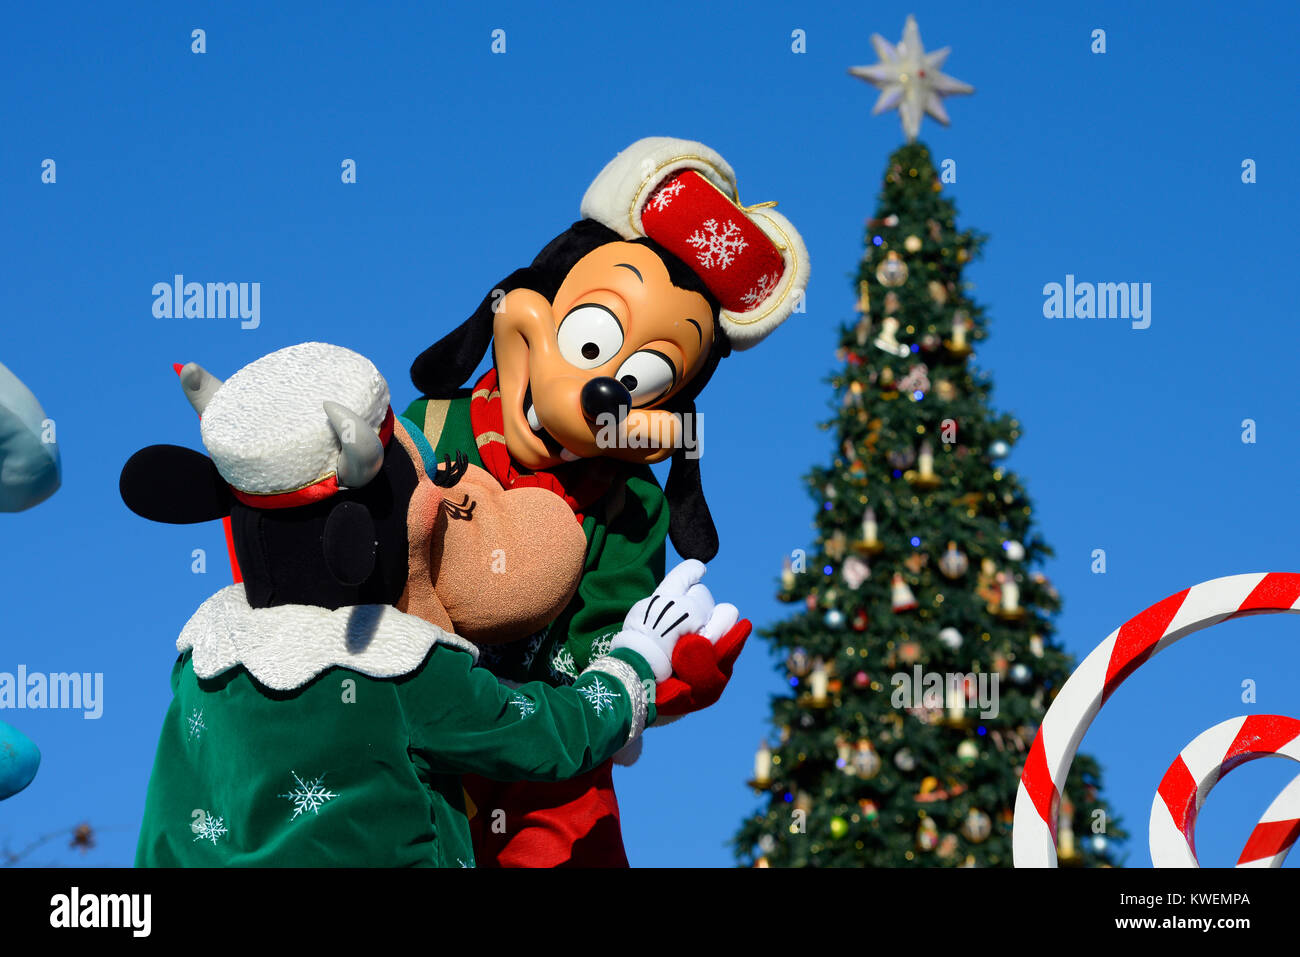 Mickey Mouse in Weihnachten Outfits in der Weihnachtszeit Parade  Stockfotografie - Alamy